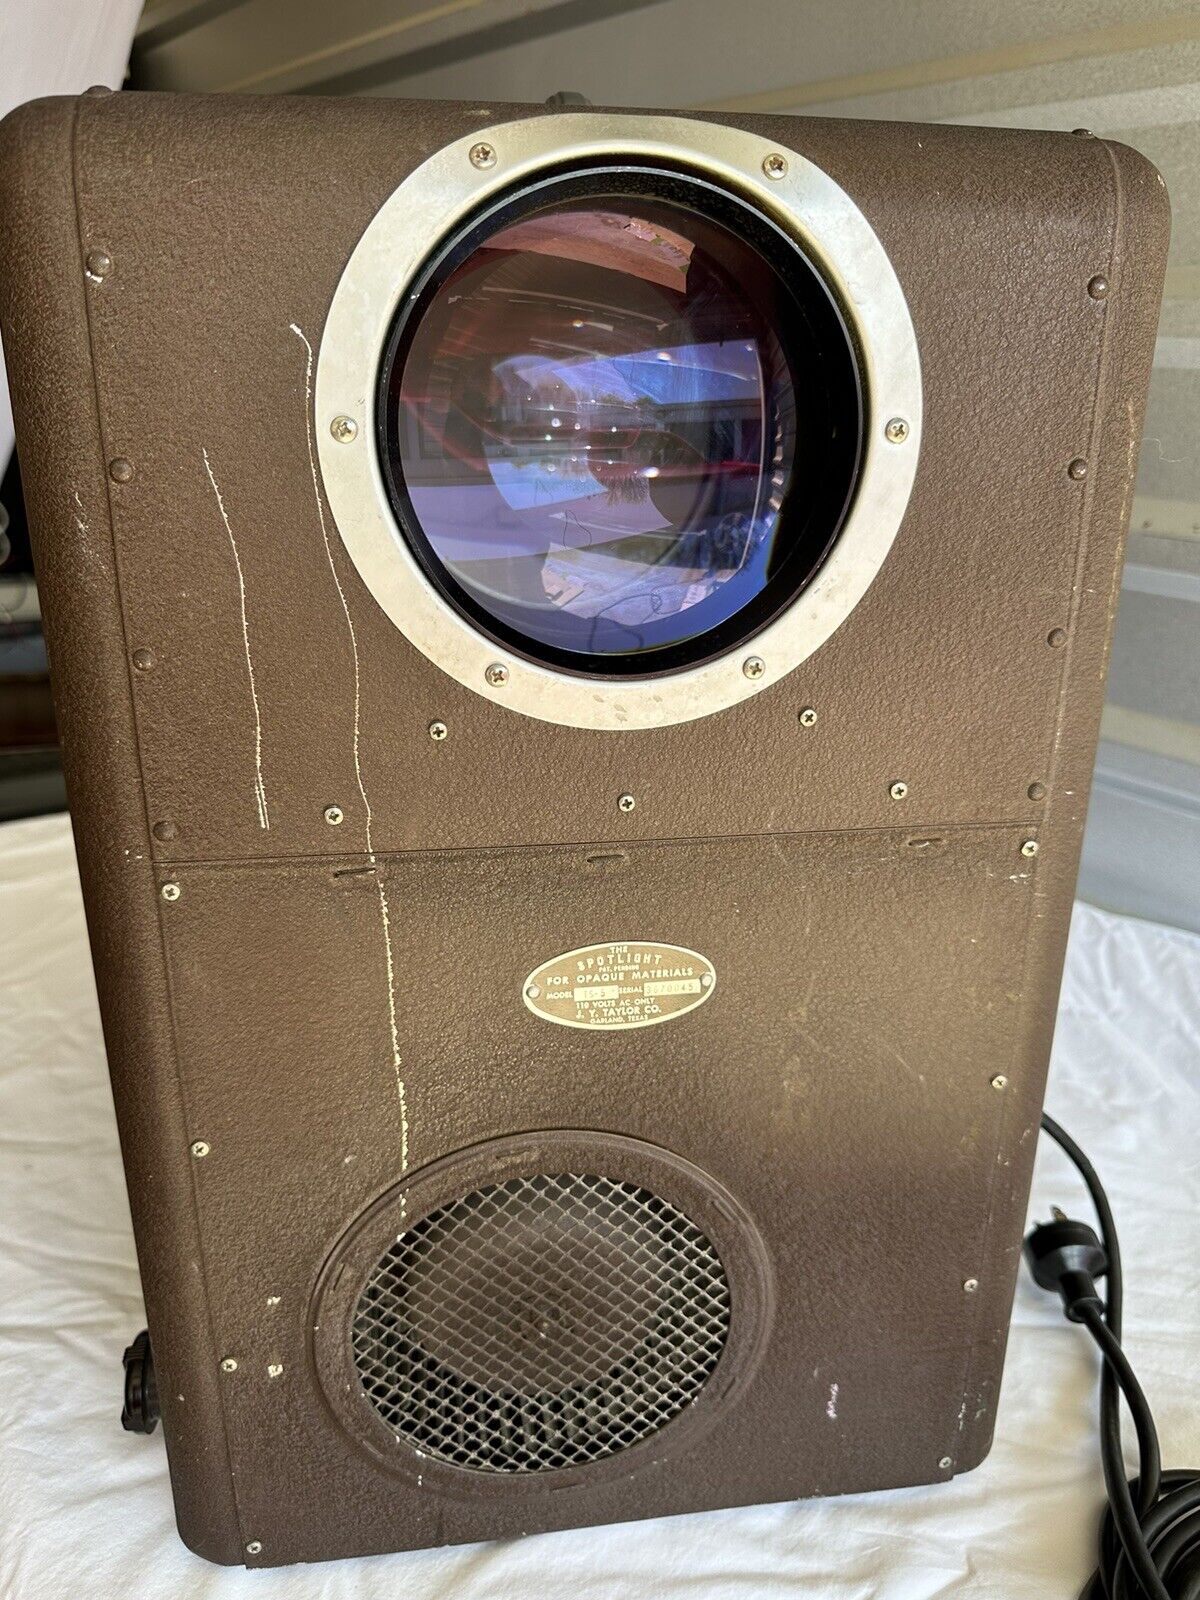 J.Y. Taylor Company TS-5, “The Spotlight” Vintage Antique Opaque Projector